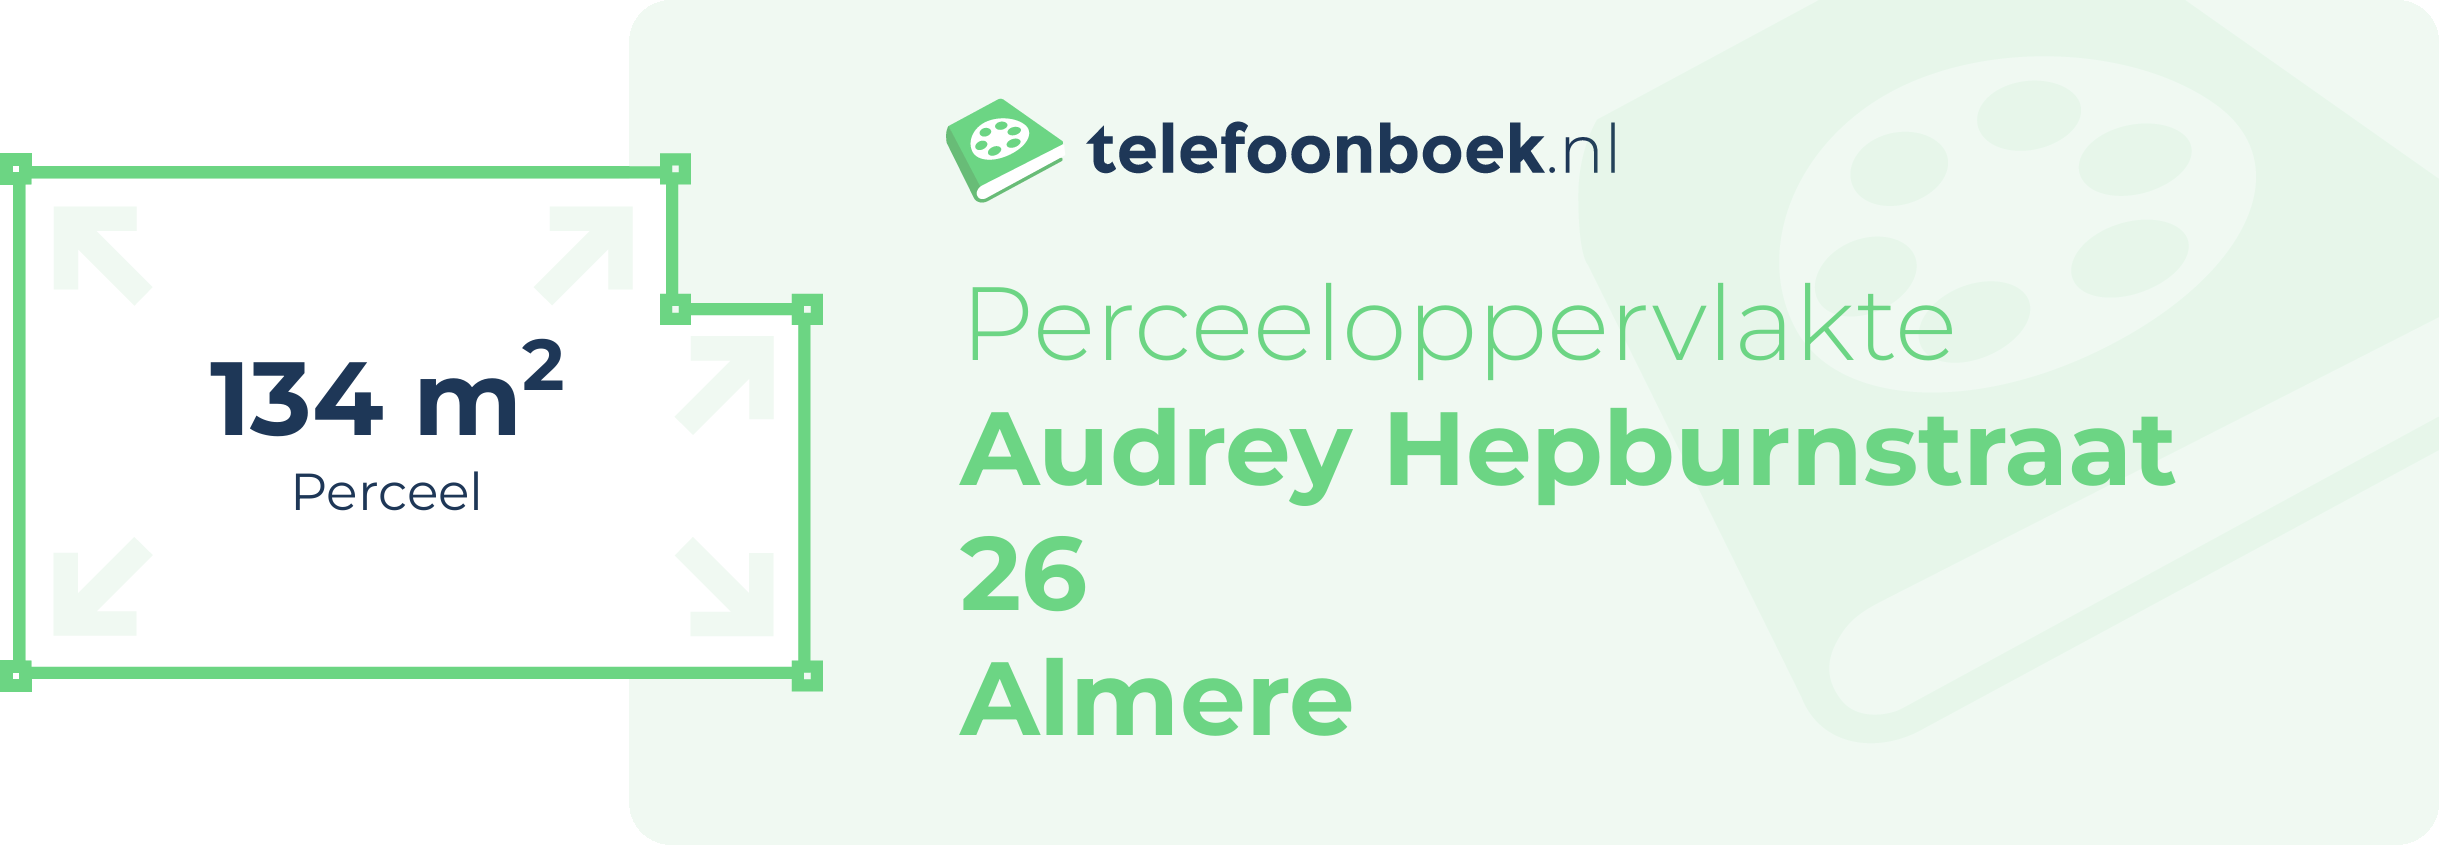 Perceeloppervlakte Audrey Hepburnstraat 26 Almere